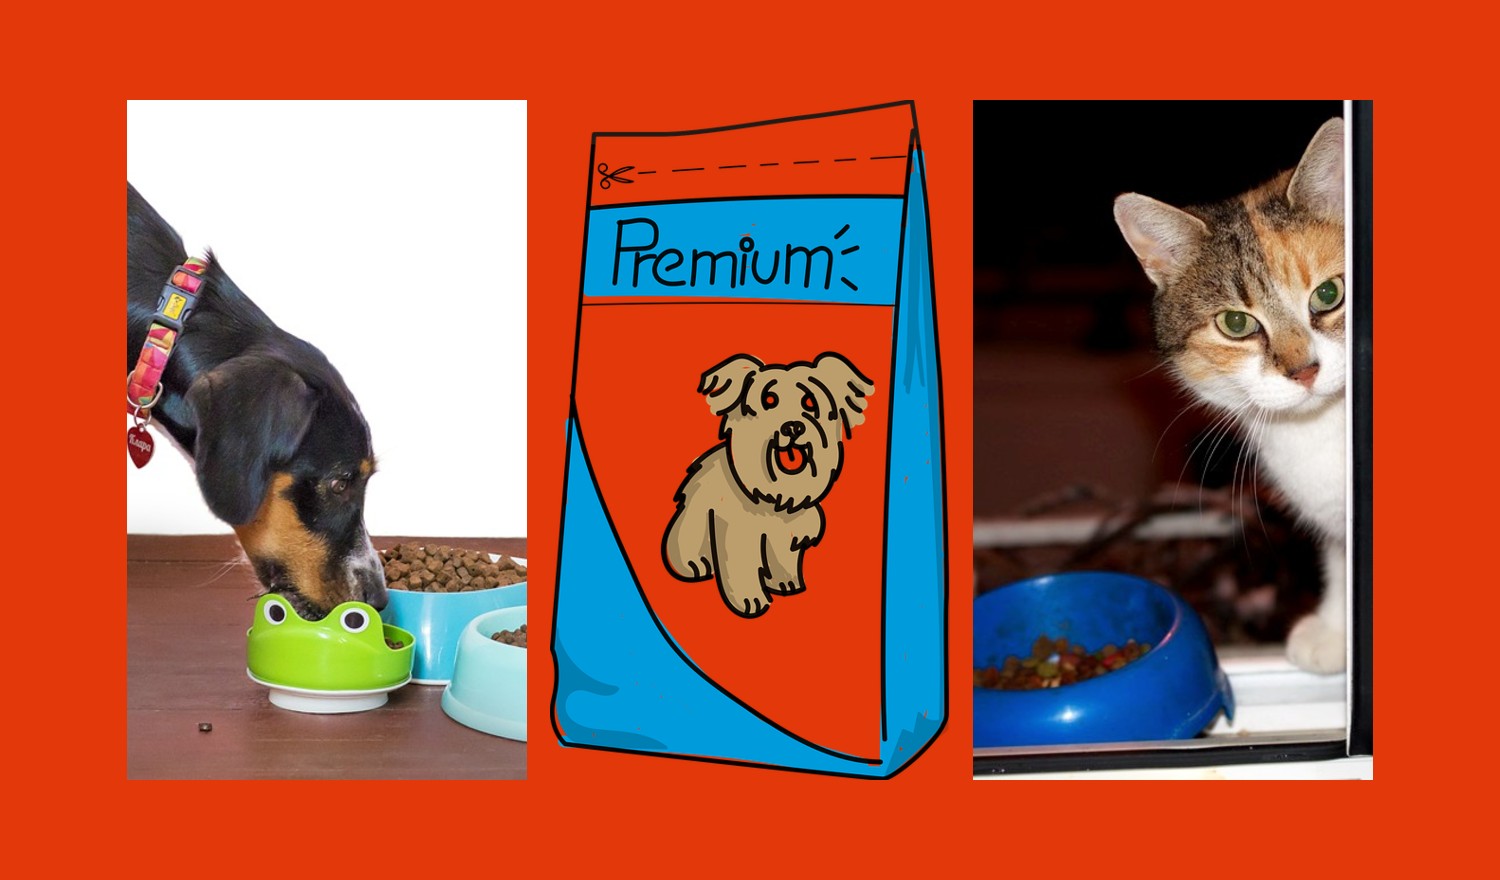 Estudio Sernac destapó alimentos para mascotas: Muchos dicen "Premium" por un tema comercial | Economía | BioBioChile